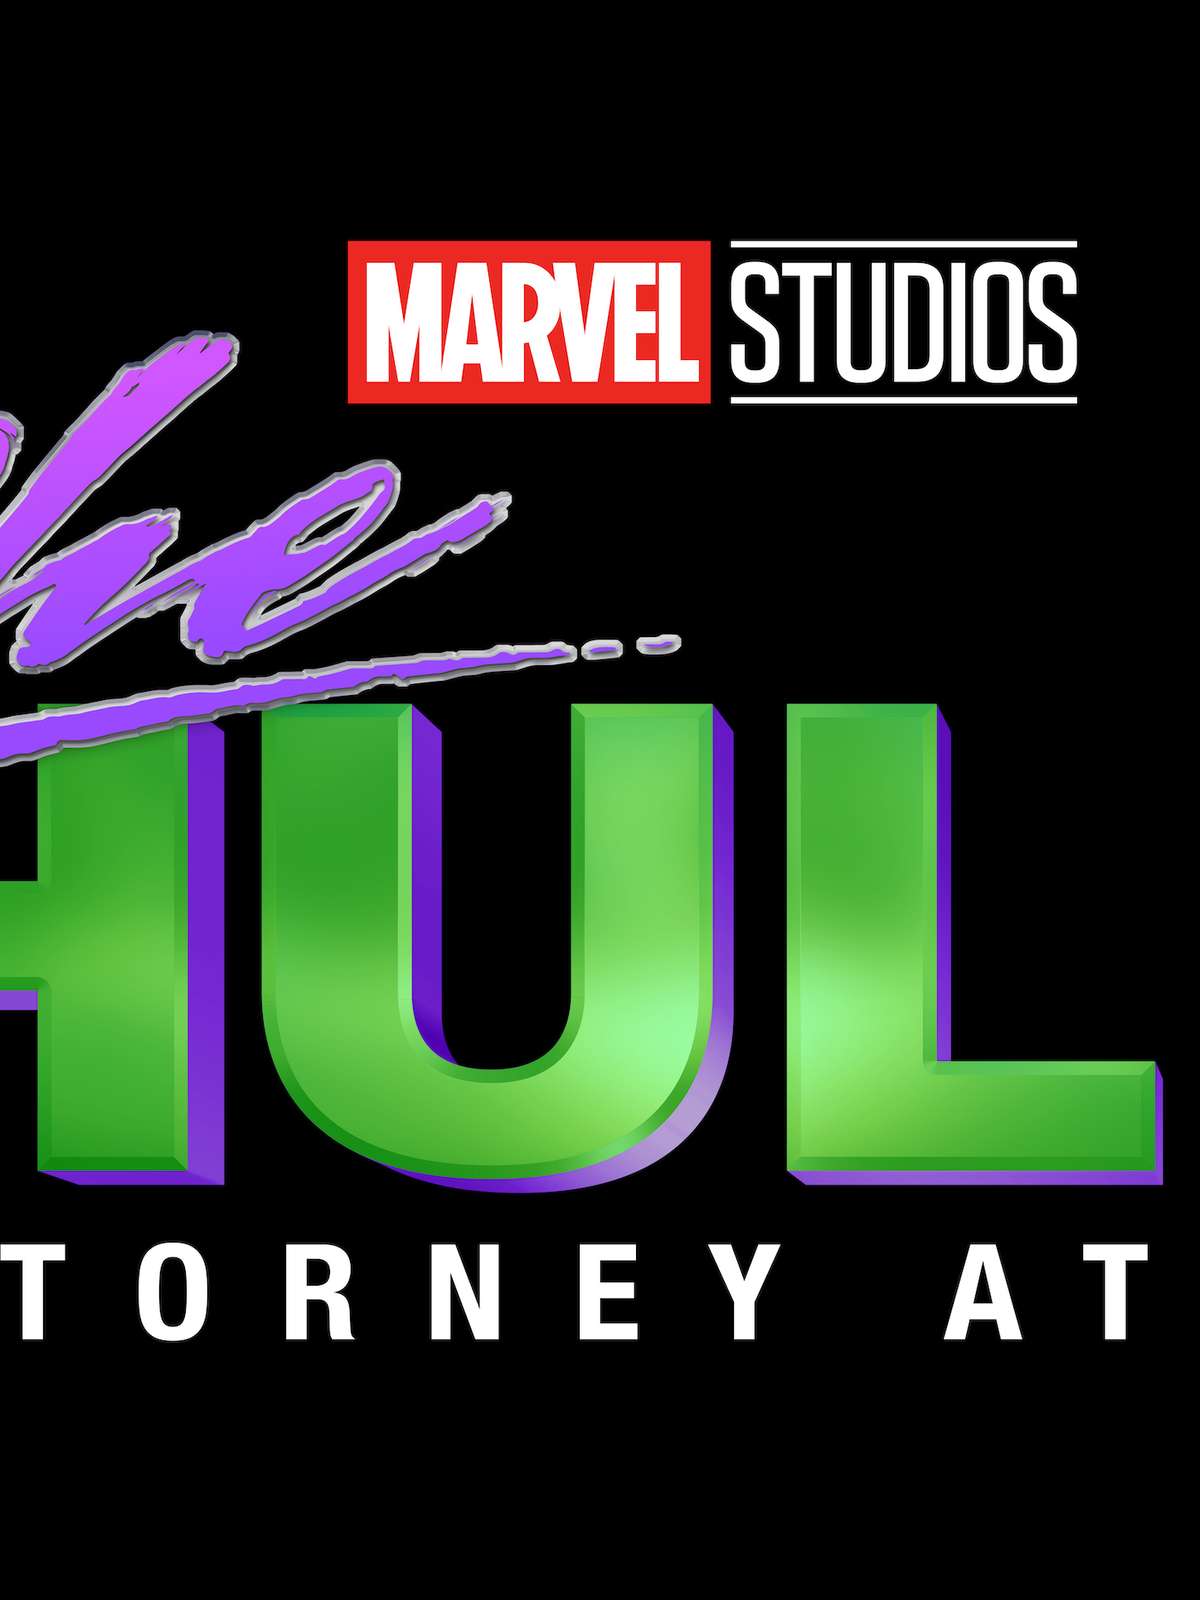 Trailer de Mulher-Hulk revela o novo visual do Demolidor na Marvel